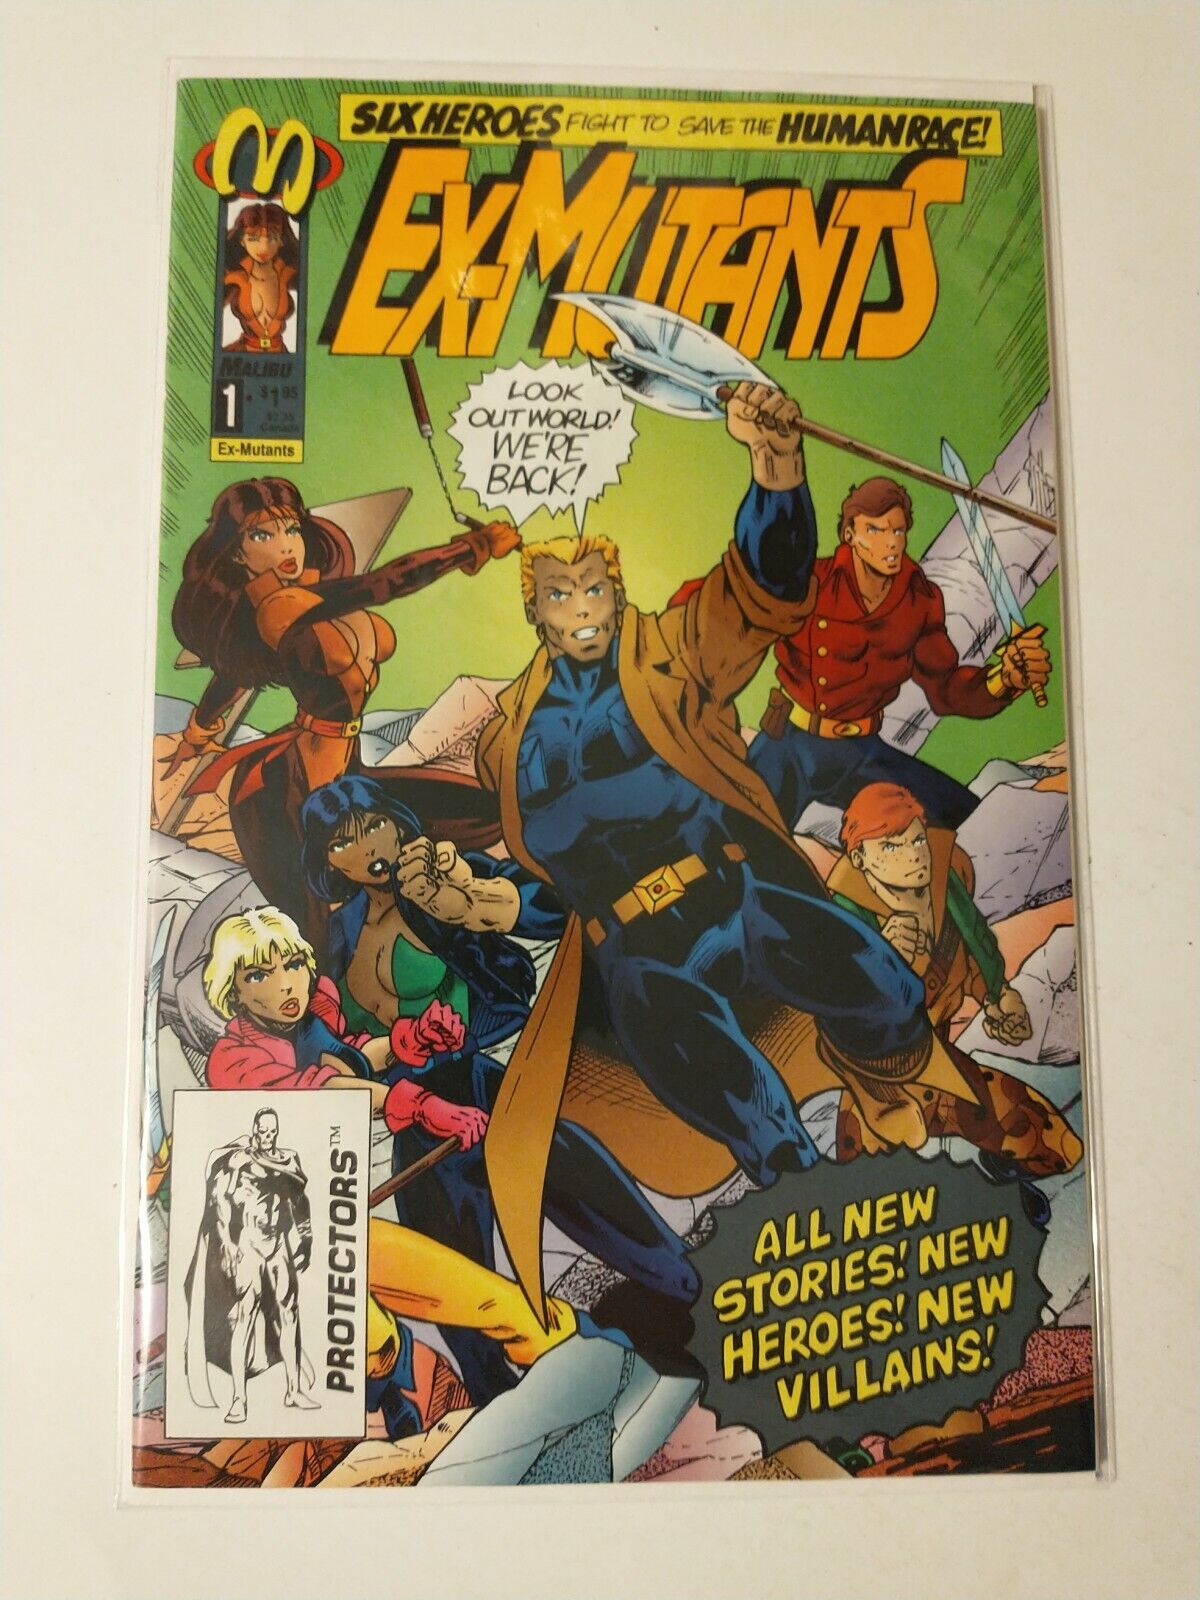 Ex-Mutants #1 November 1992